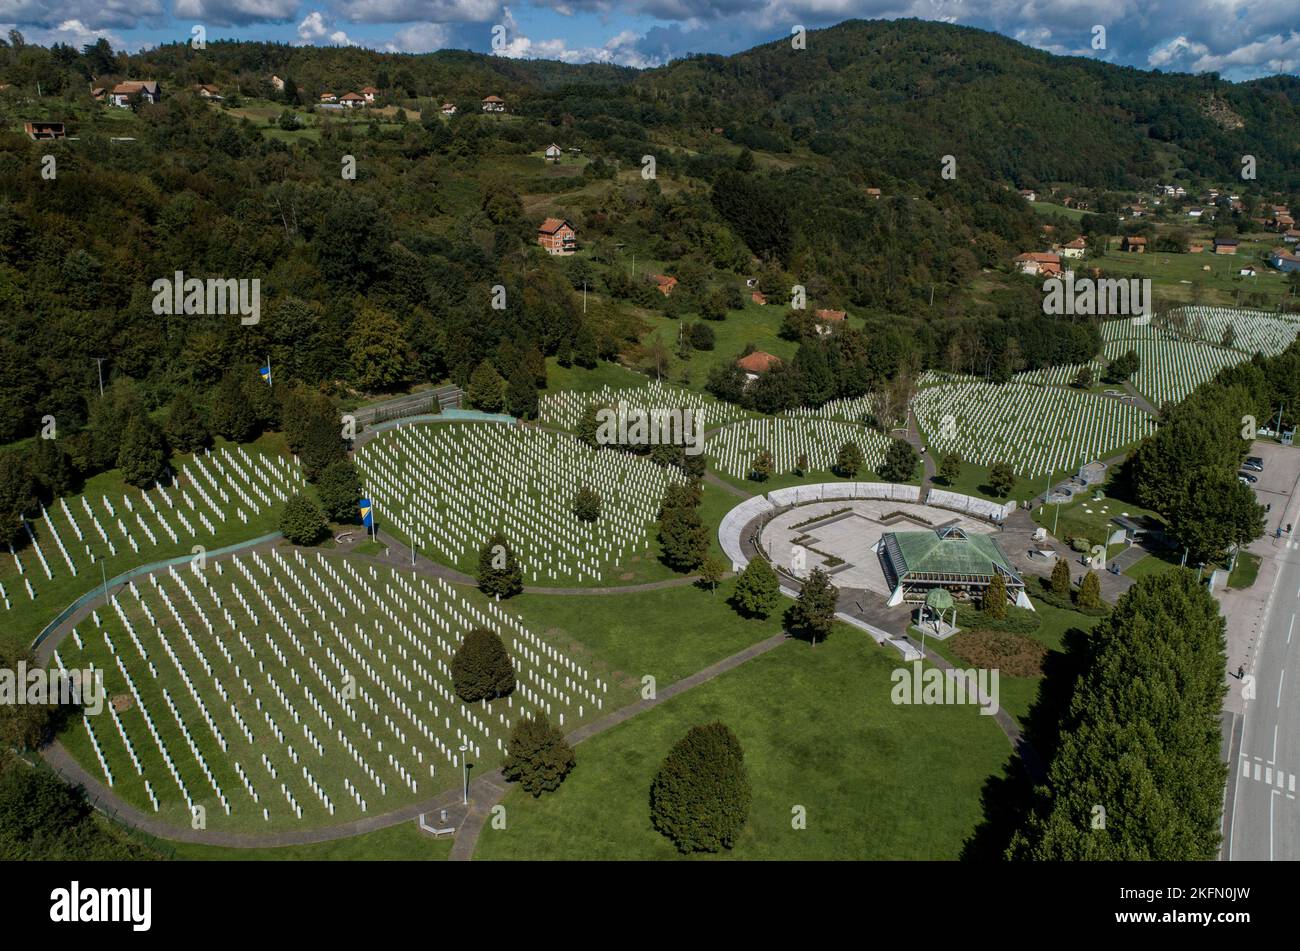 Drone image of Srebrenica Genocide Memorial. Burial site with 8373 victims of Srebrenica genocide. Potocari, Bosnia & Hercegovina in June 1995 Stock Photo